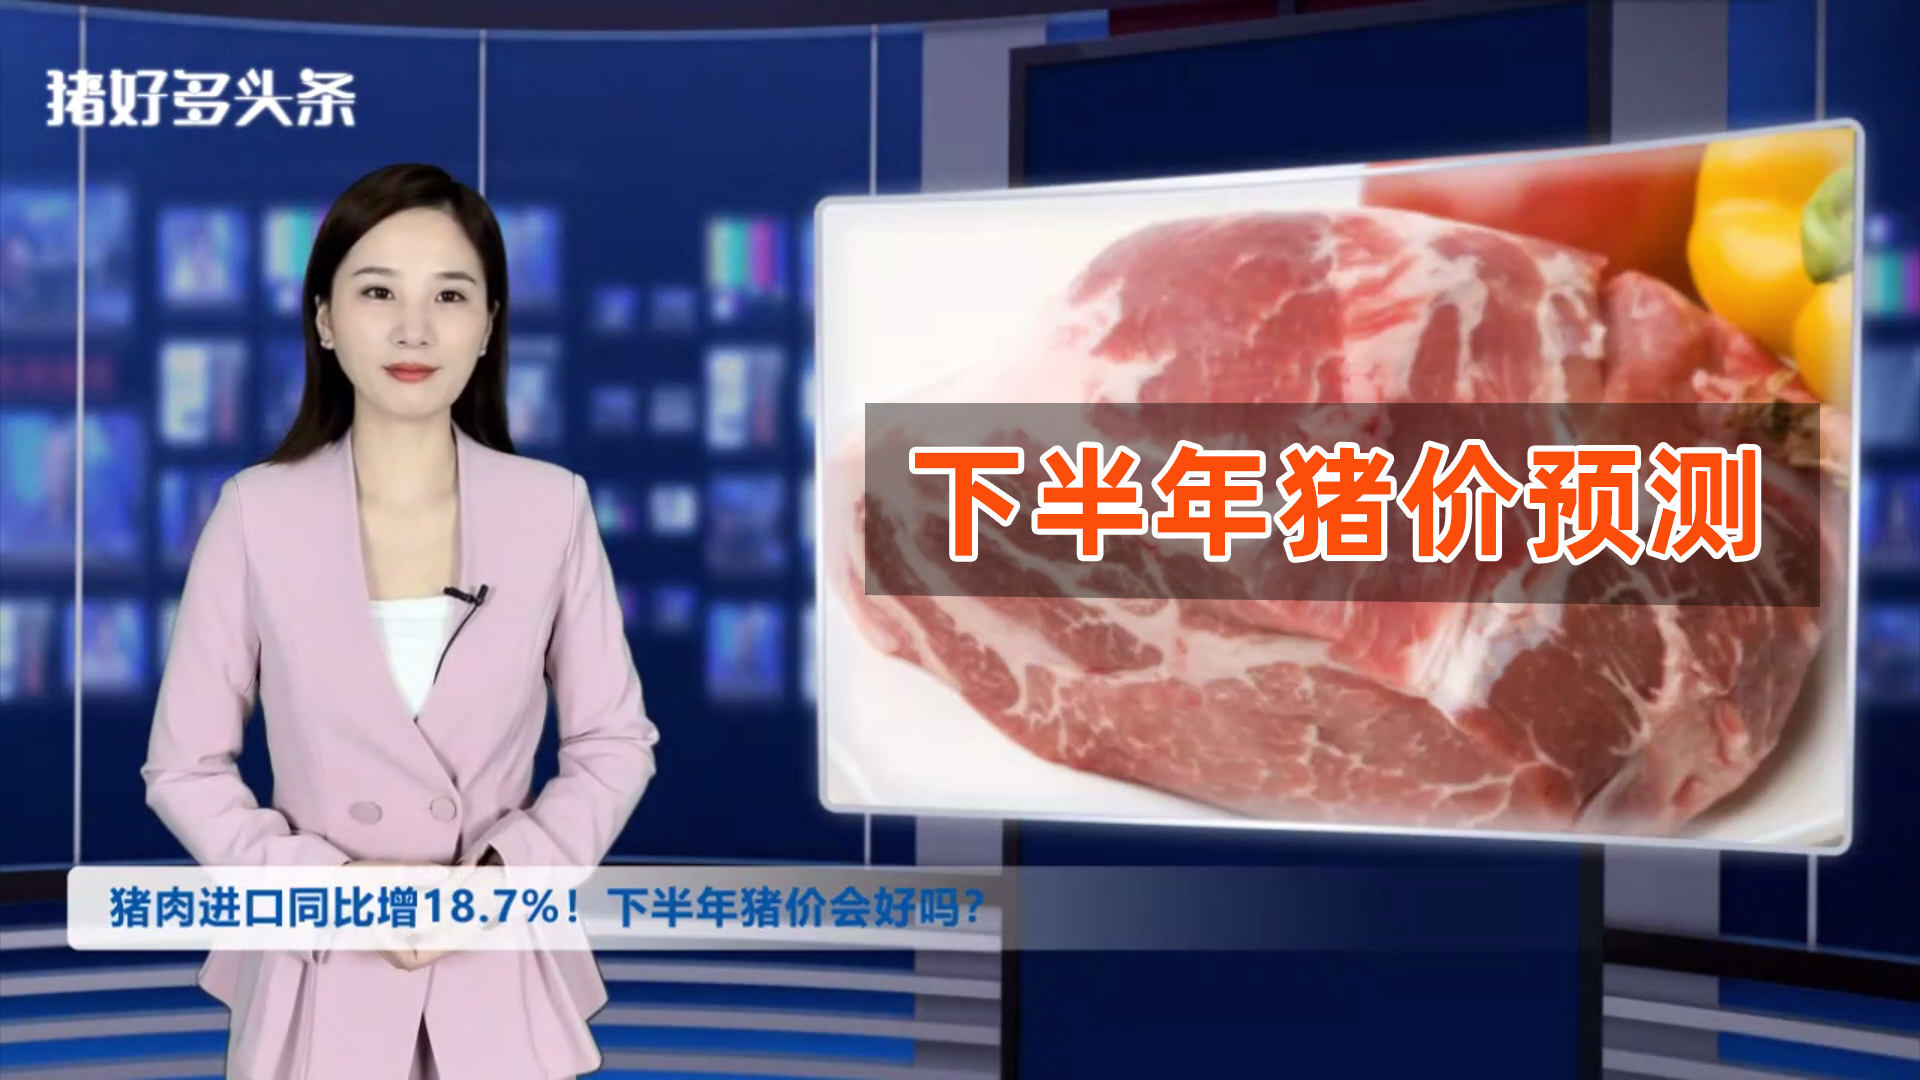 猪肉进口同比增18.7%！压制猪价的3大原因曝光！下半年会好吗？